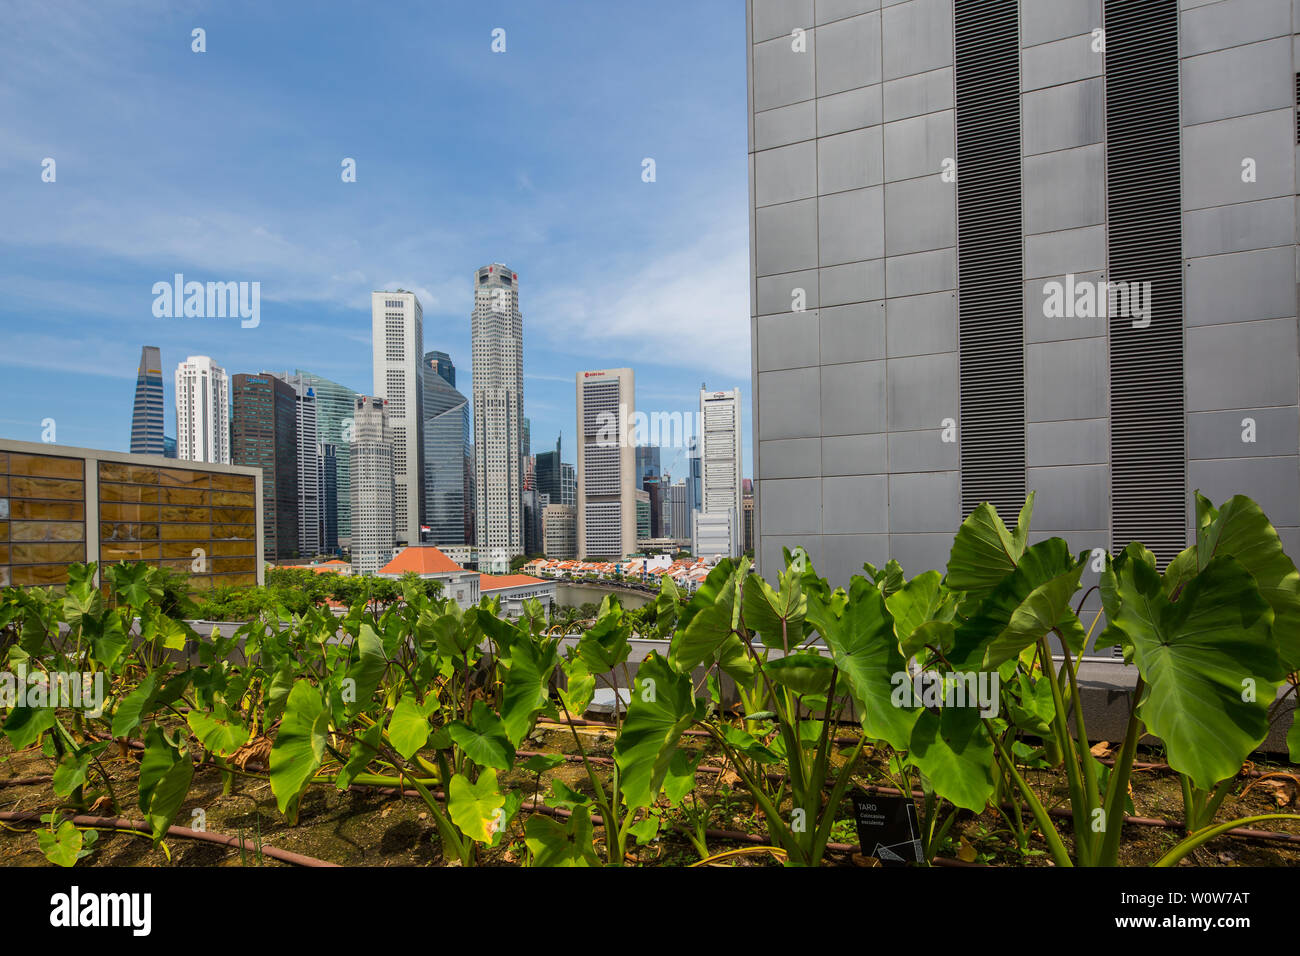 Urban Farming sul tetto del Centro commerciale Funan, il tetto aperto offre una splendida vista del quartiere Centrale degli Affari di Singapore. Foto Stock